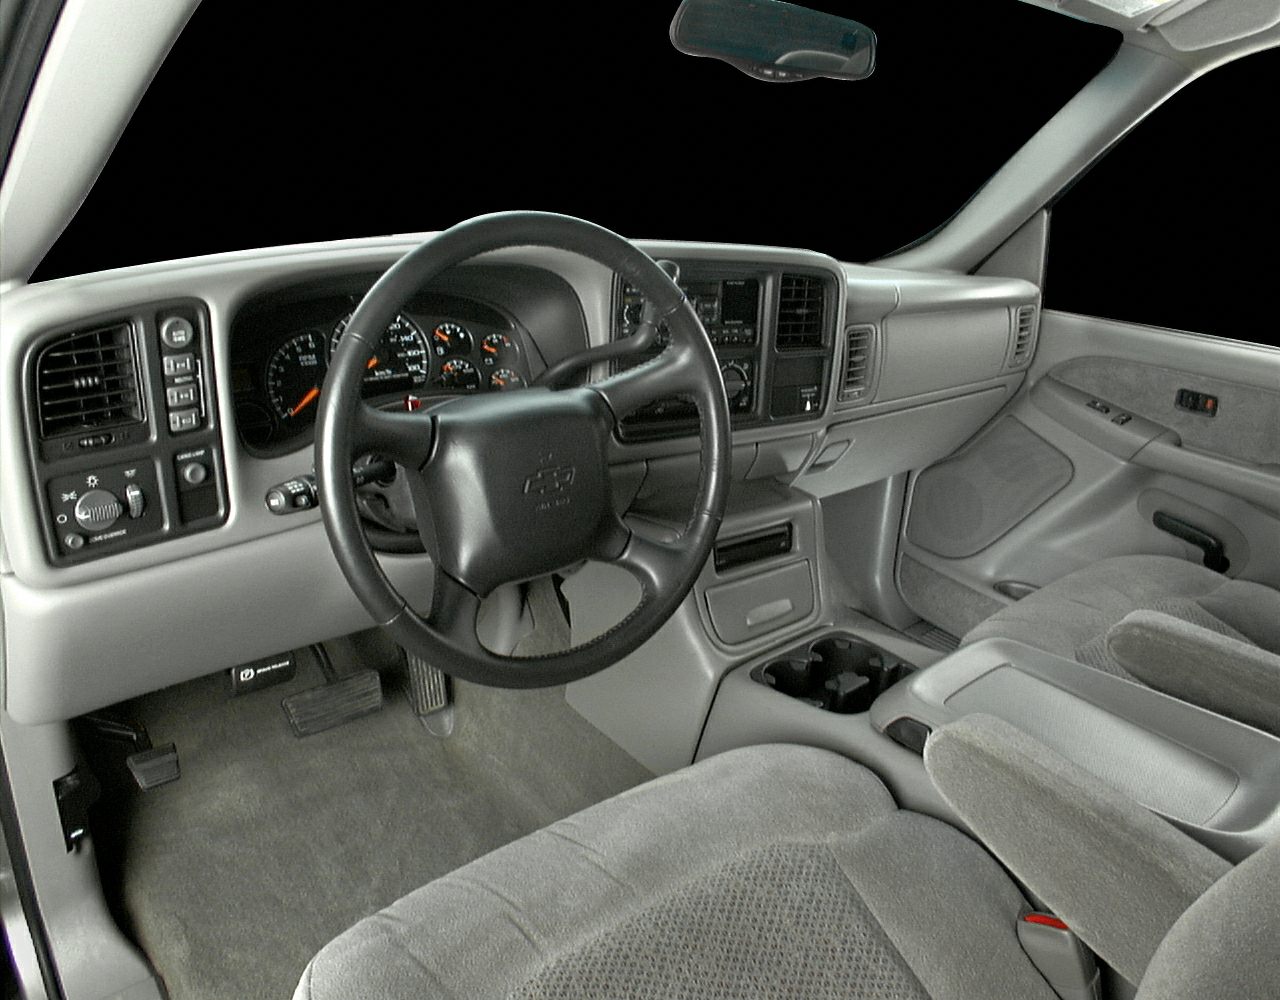 2000 silverado interior extended cab doors handle